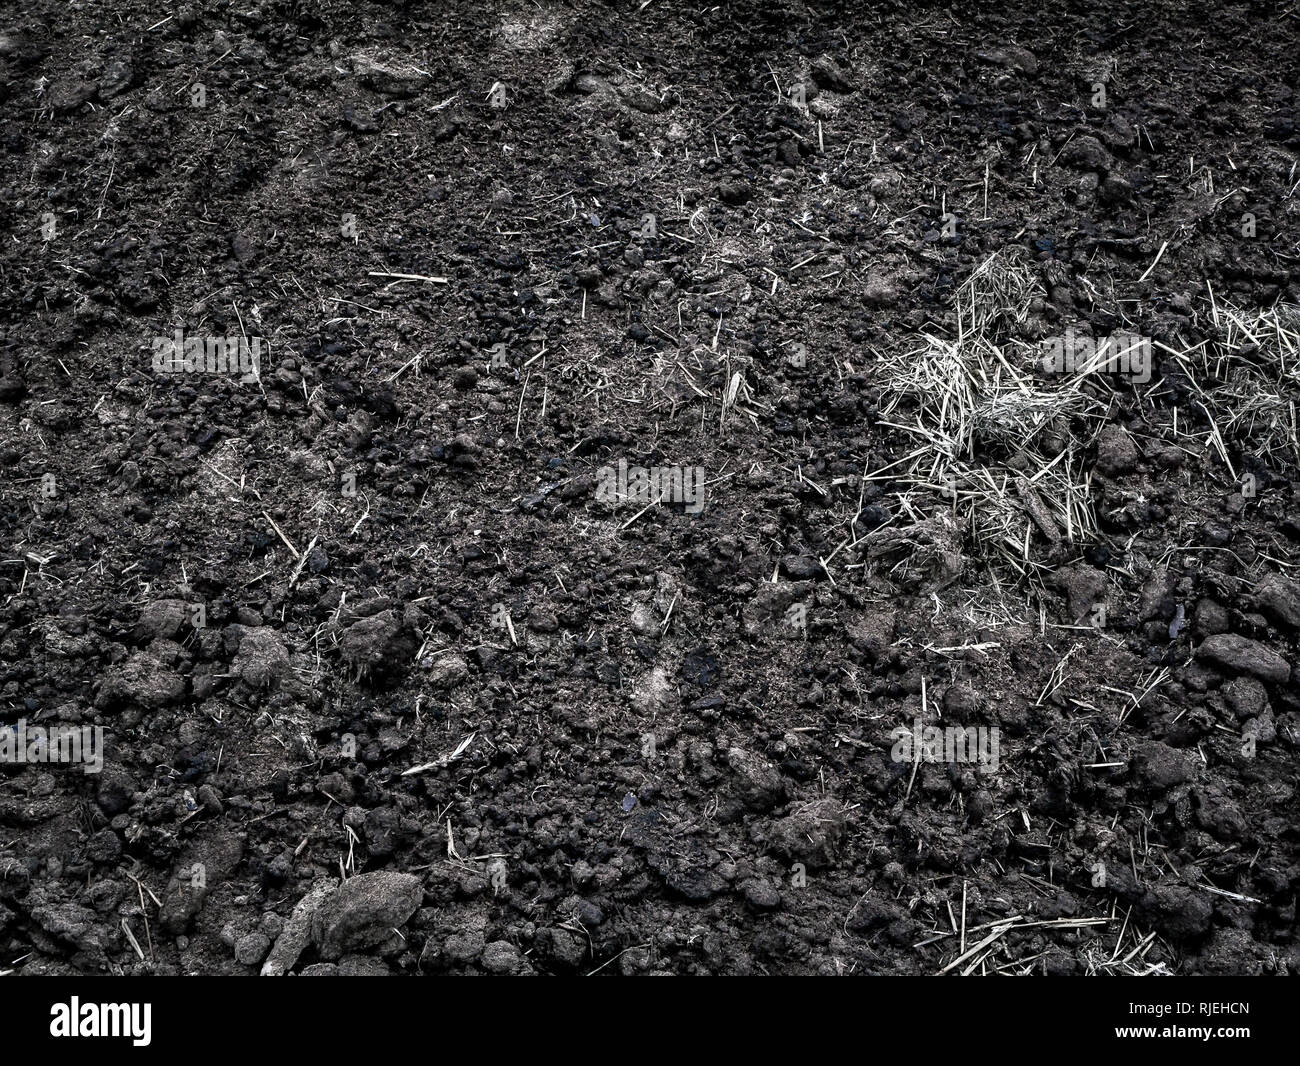 Terra nera immagini e fotografie stock ad alta risoluzione - Alamy